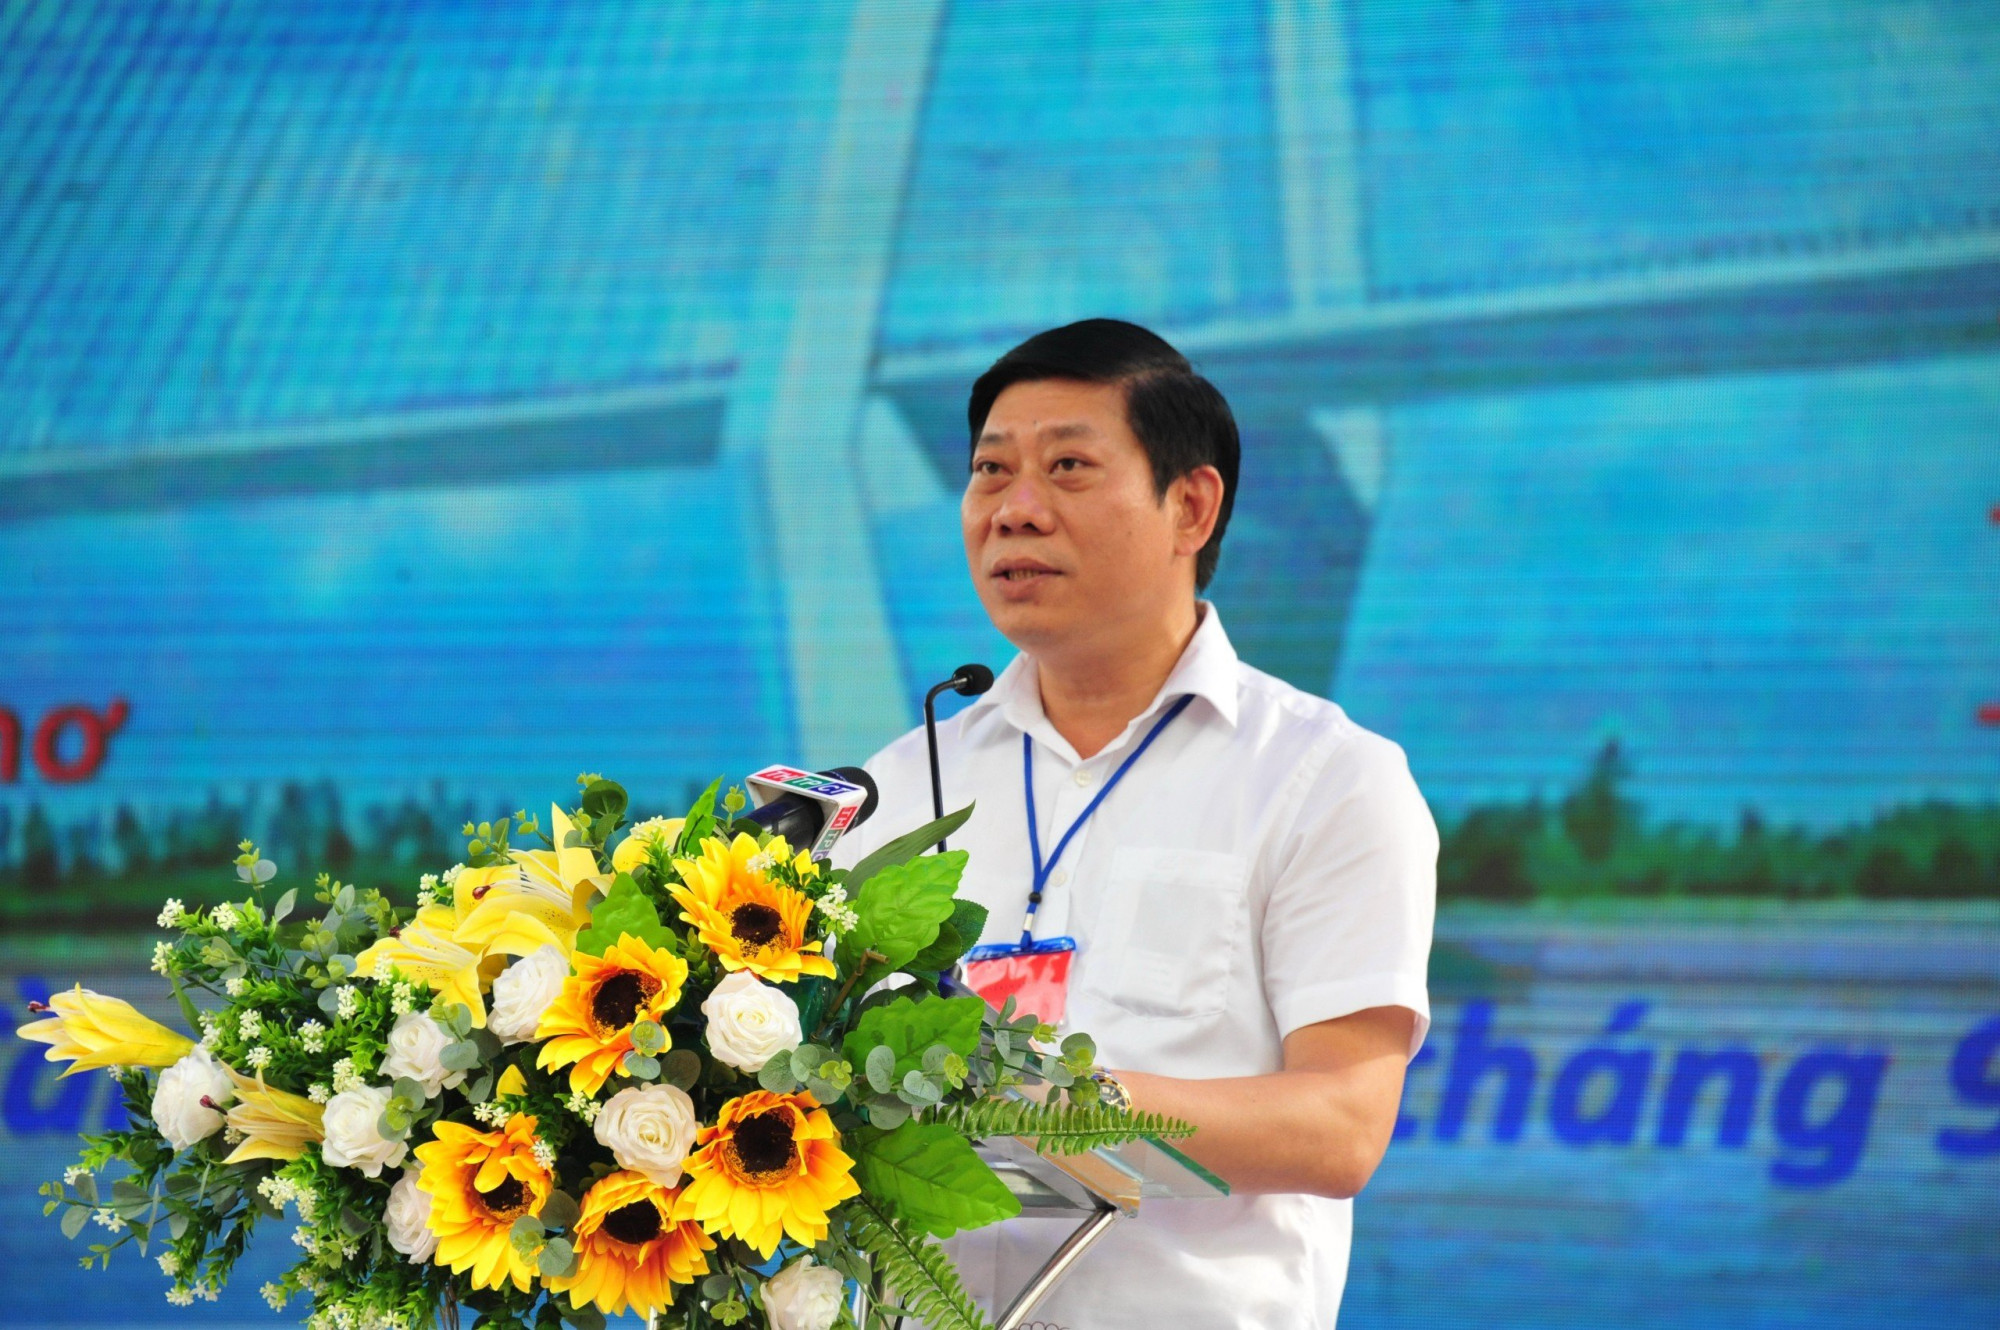 Ông Nguyễn Quang Hùng - Cục trưởng Cục Kiểm ngư (Bộ Nông nghiệp và Phát triển nông thôn)  phát biểu tại buổi lễ